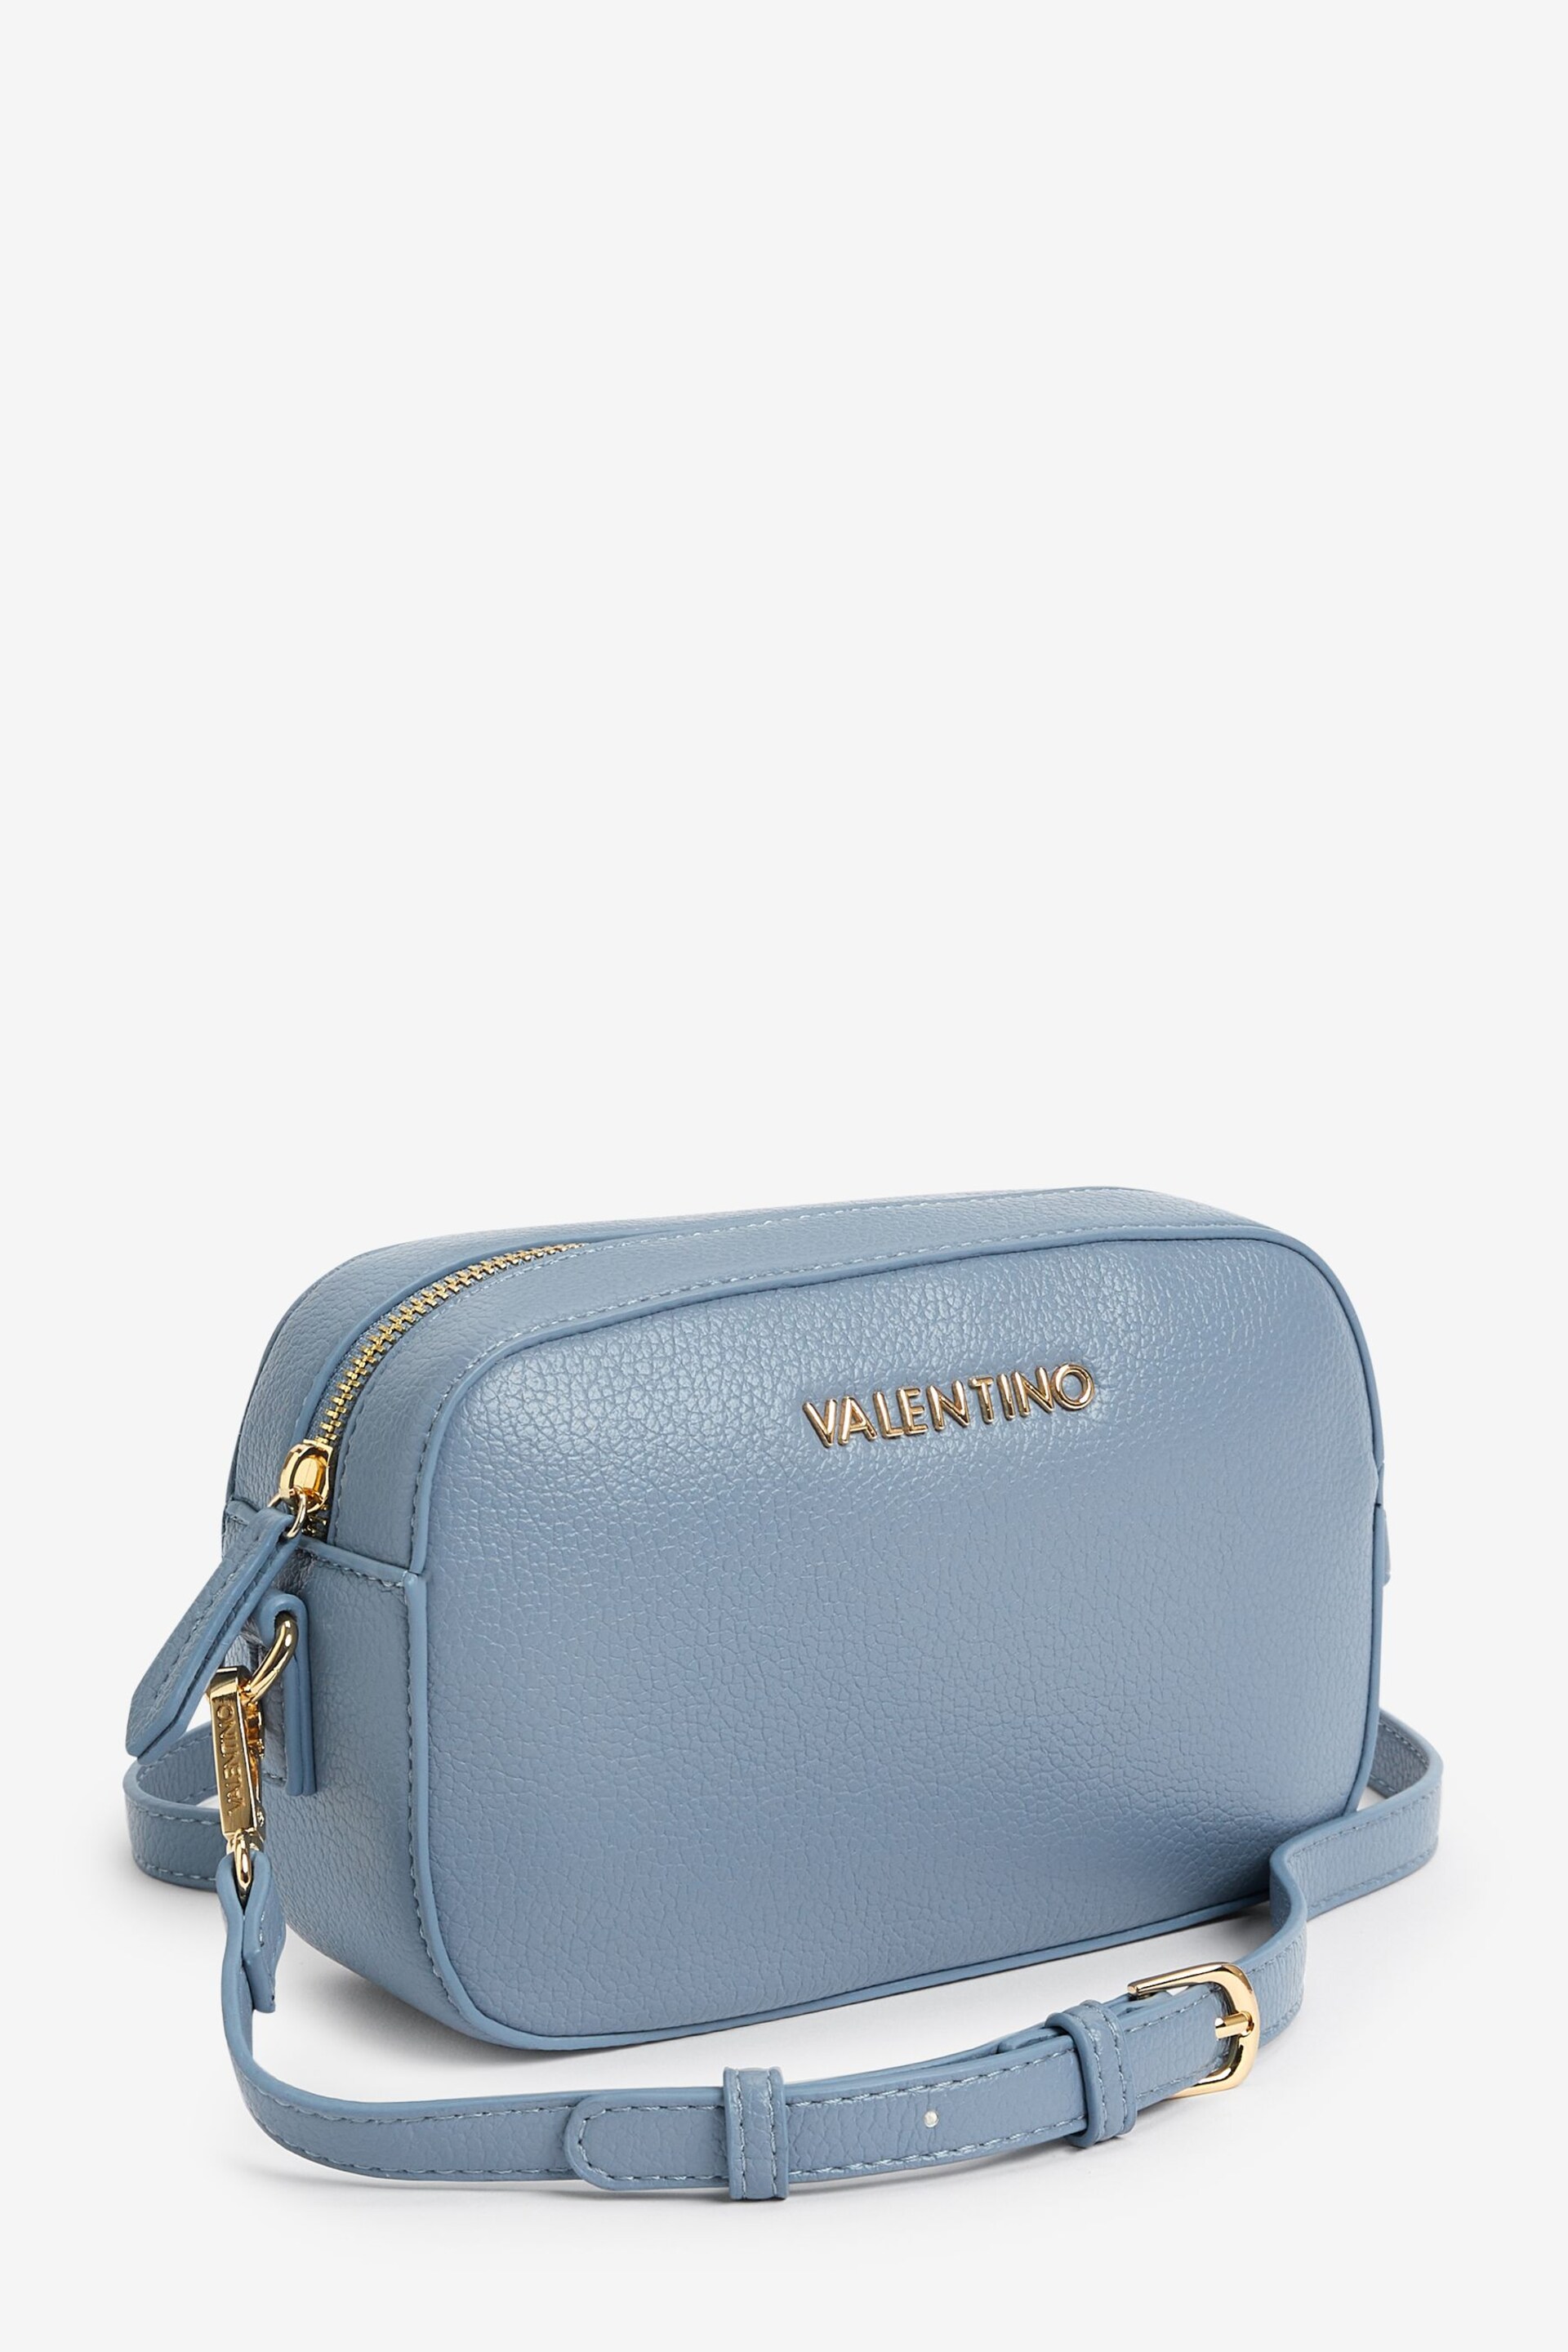 Valentino Bags Blue Special Martu Camera Bag - Image 1 of 5